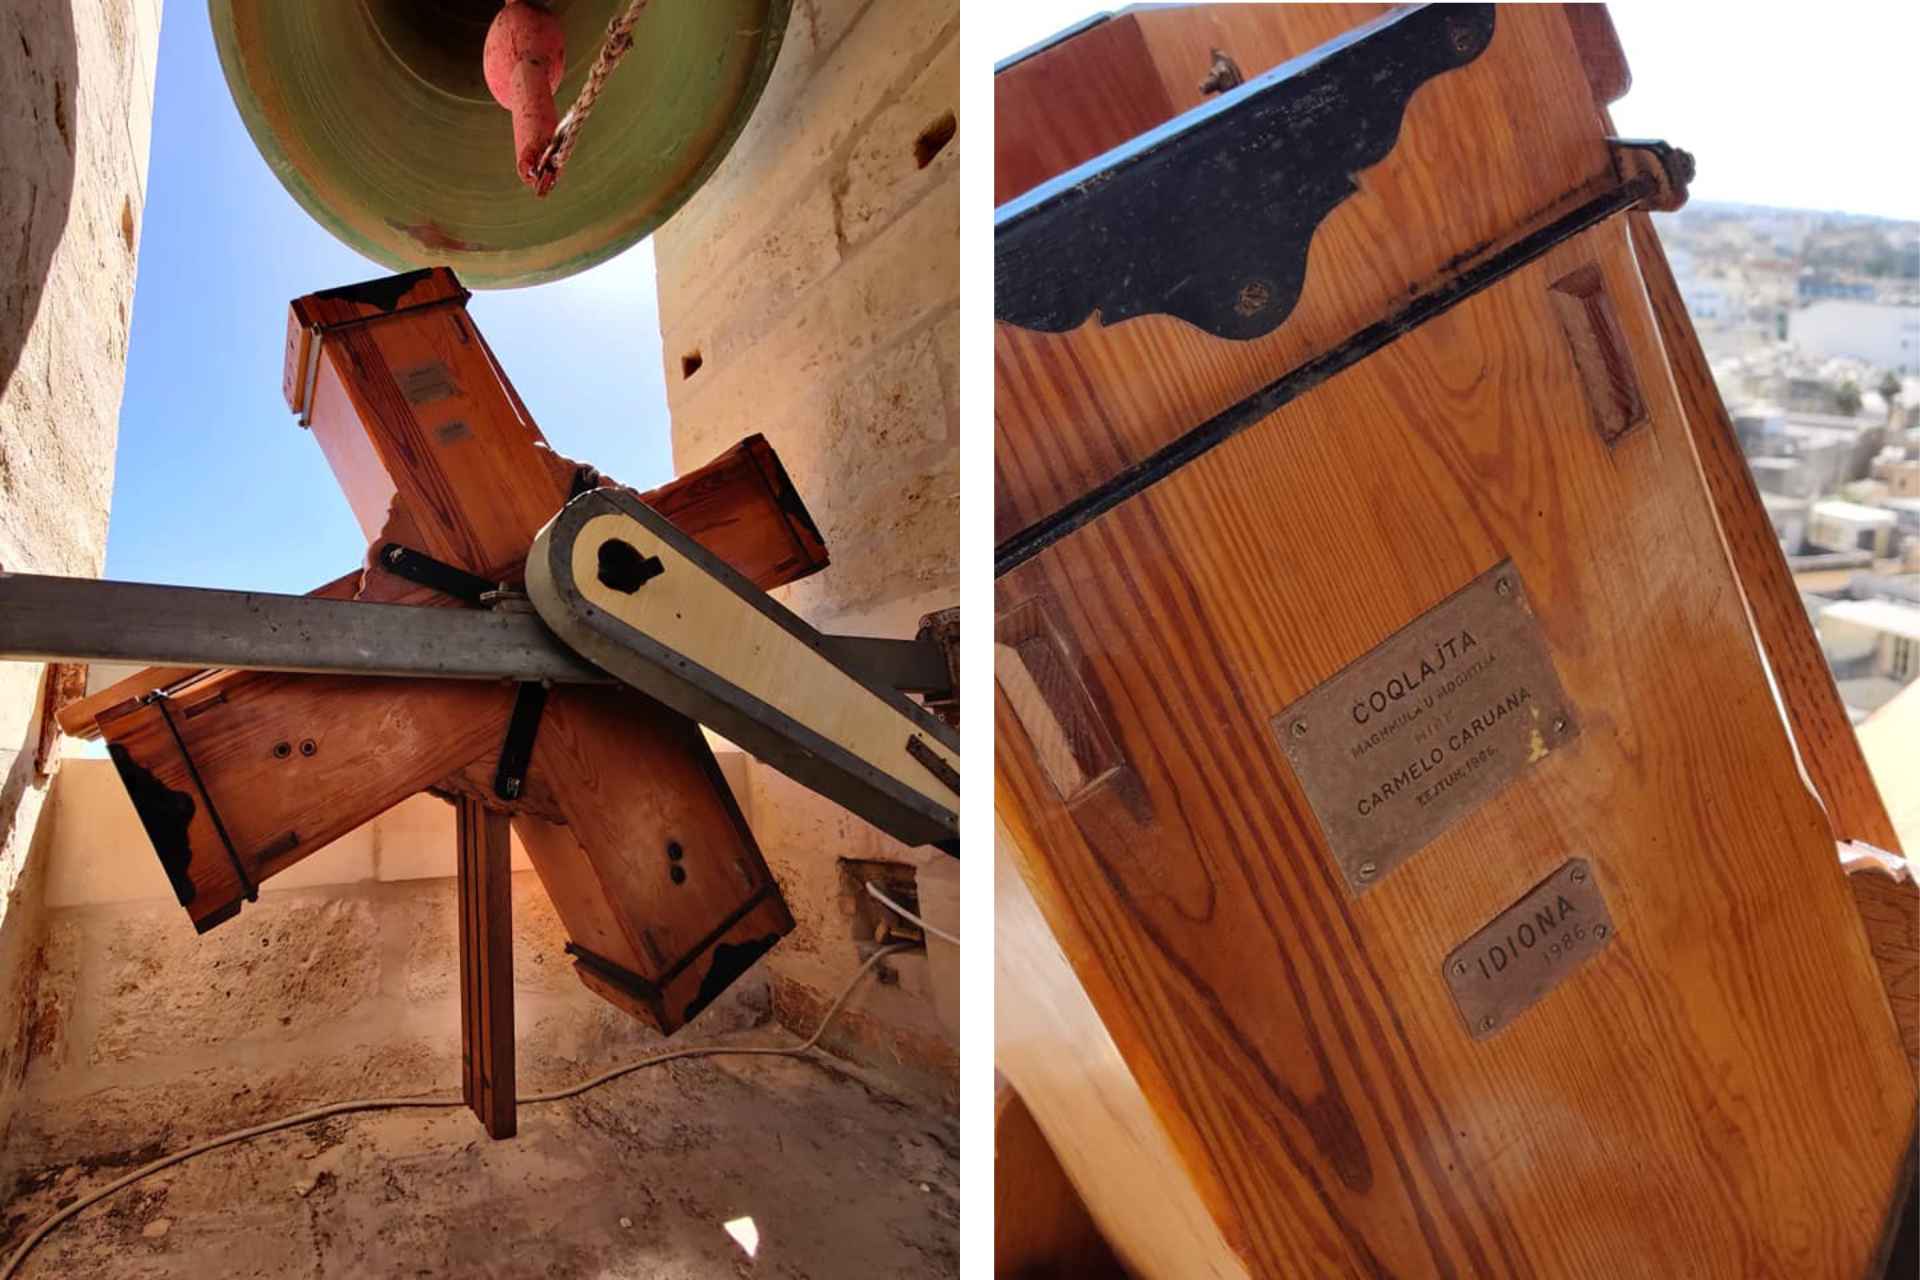 cuqlajta - large wooden rattle-like instrument